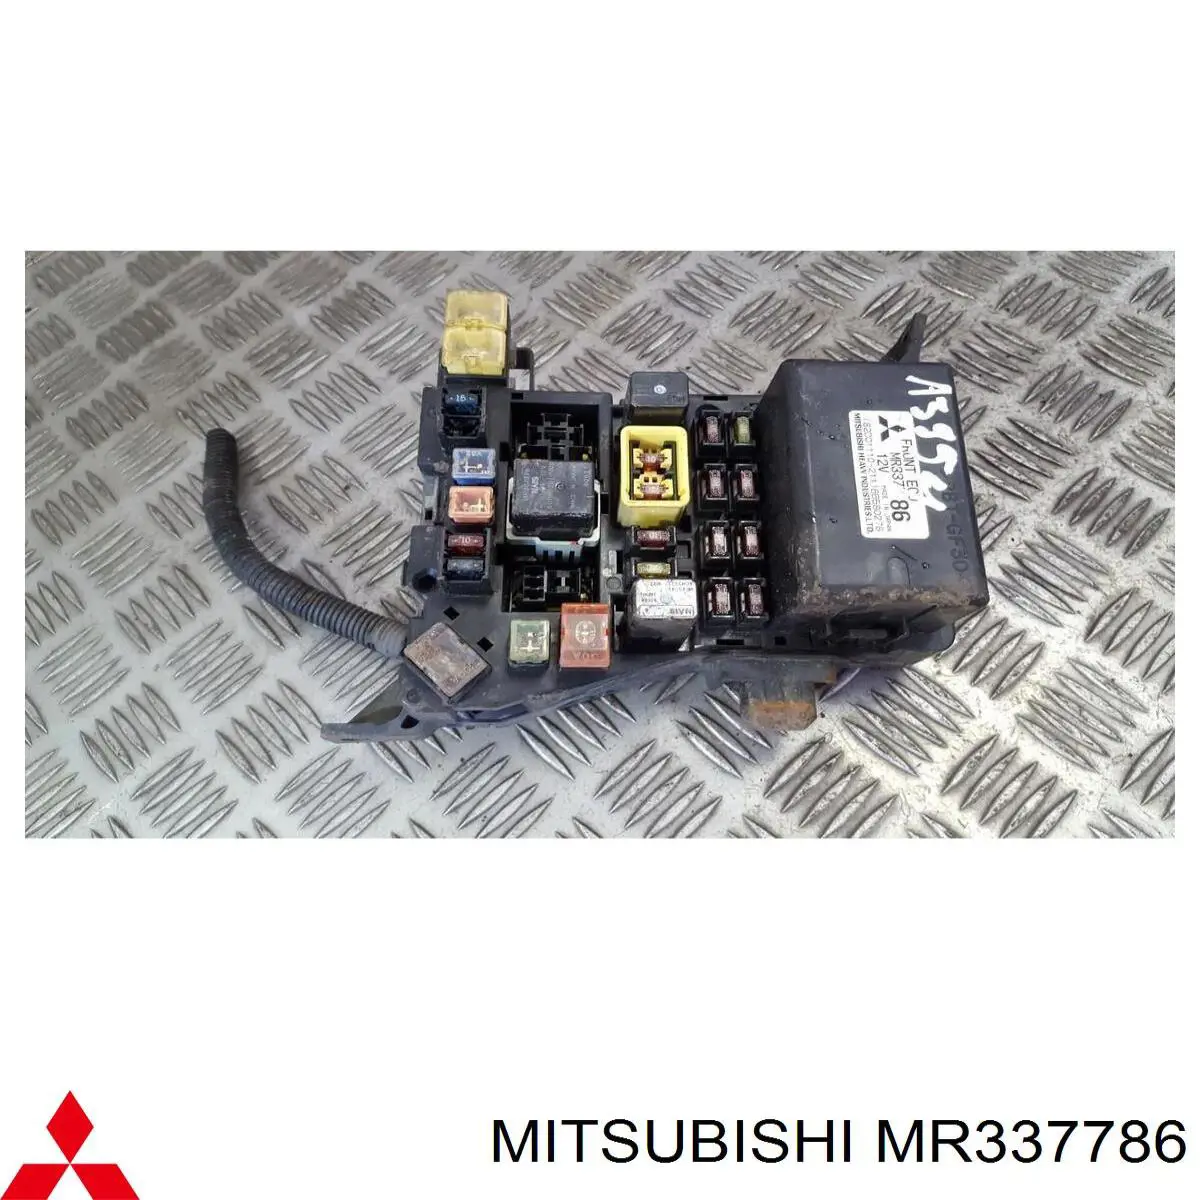 MR337785 Mitsubishi relé, faro